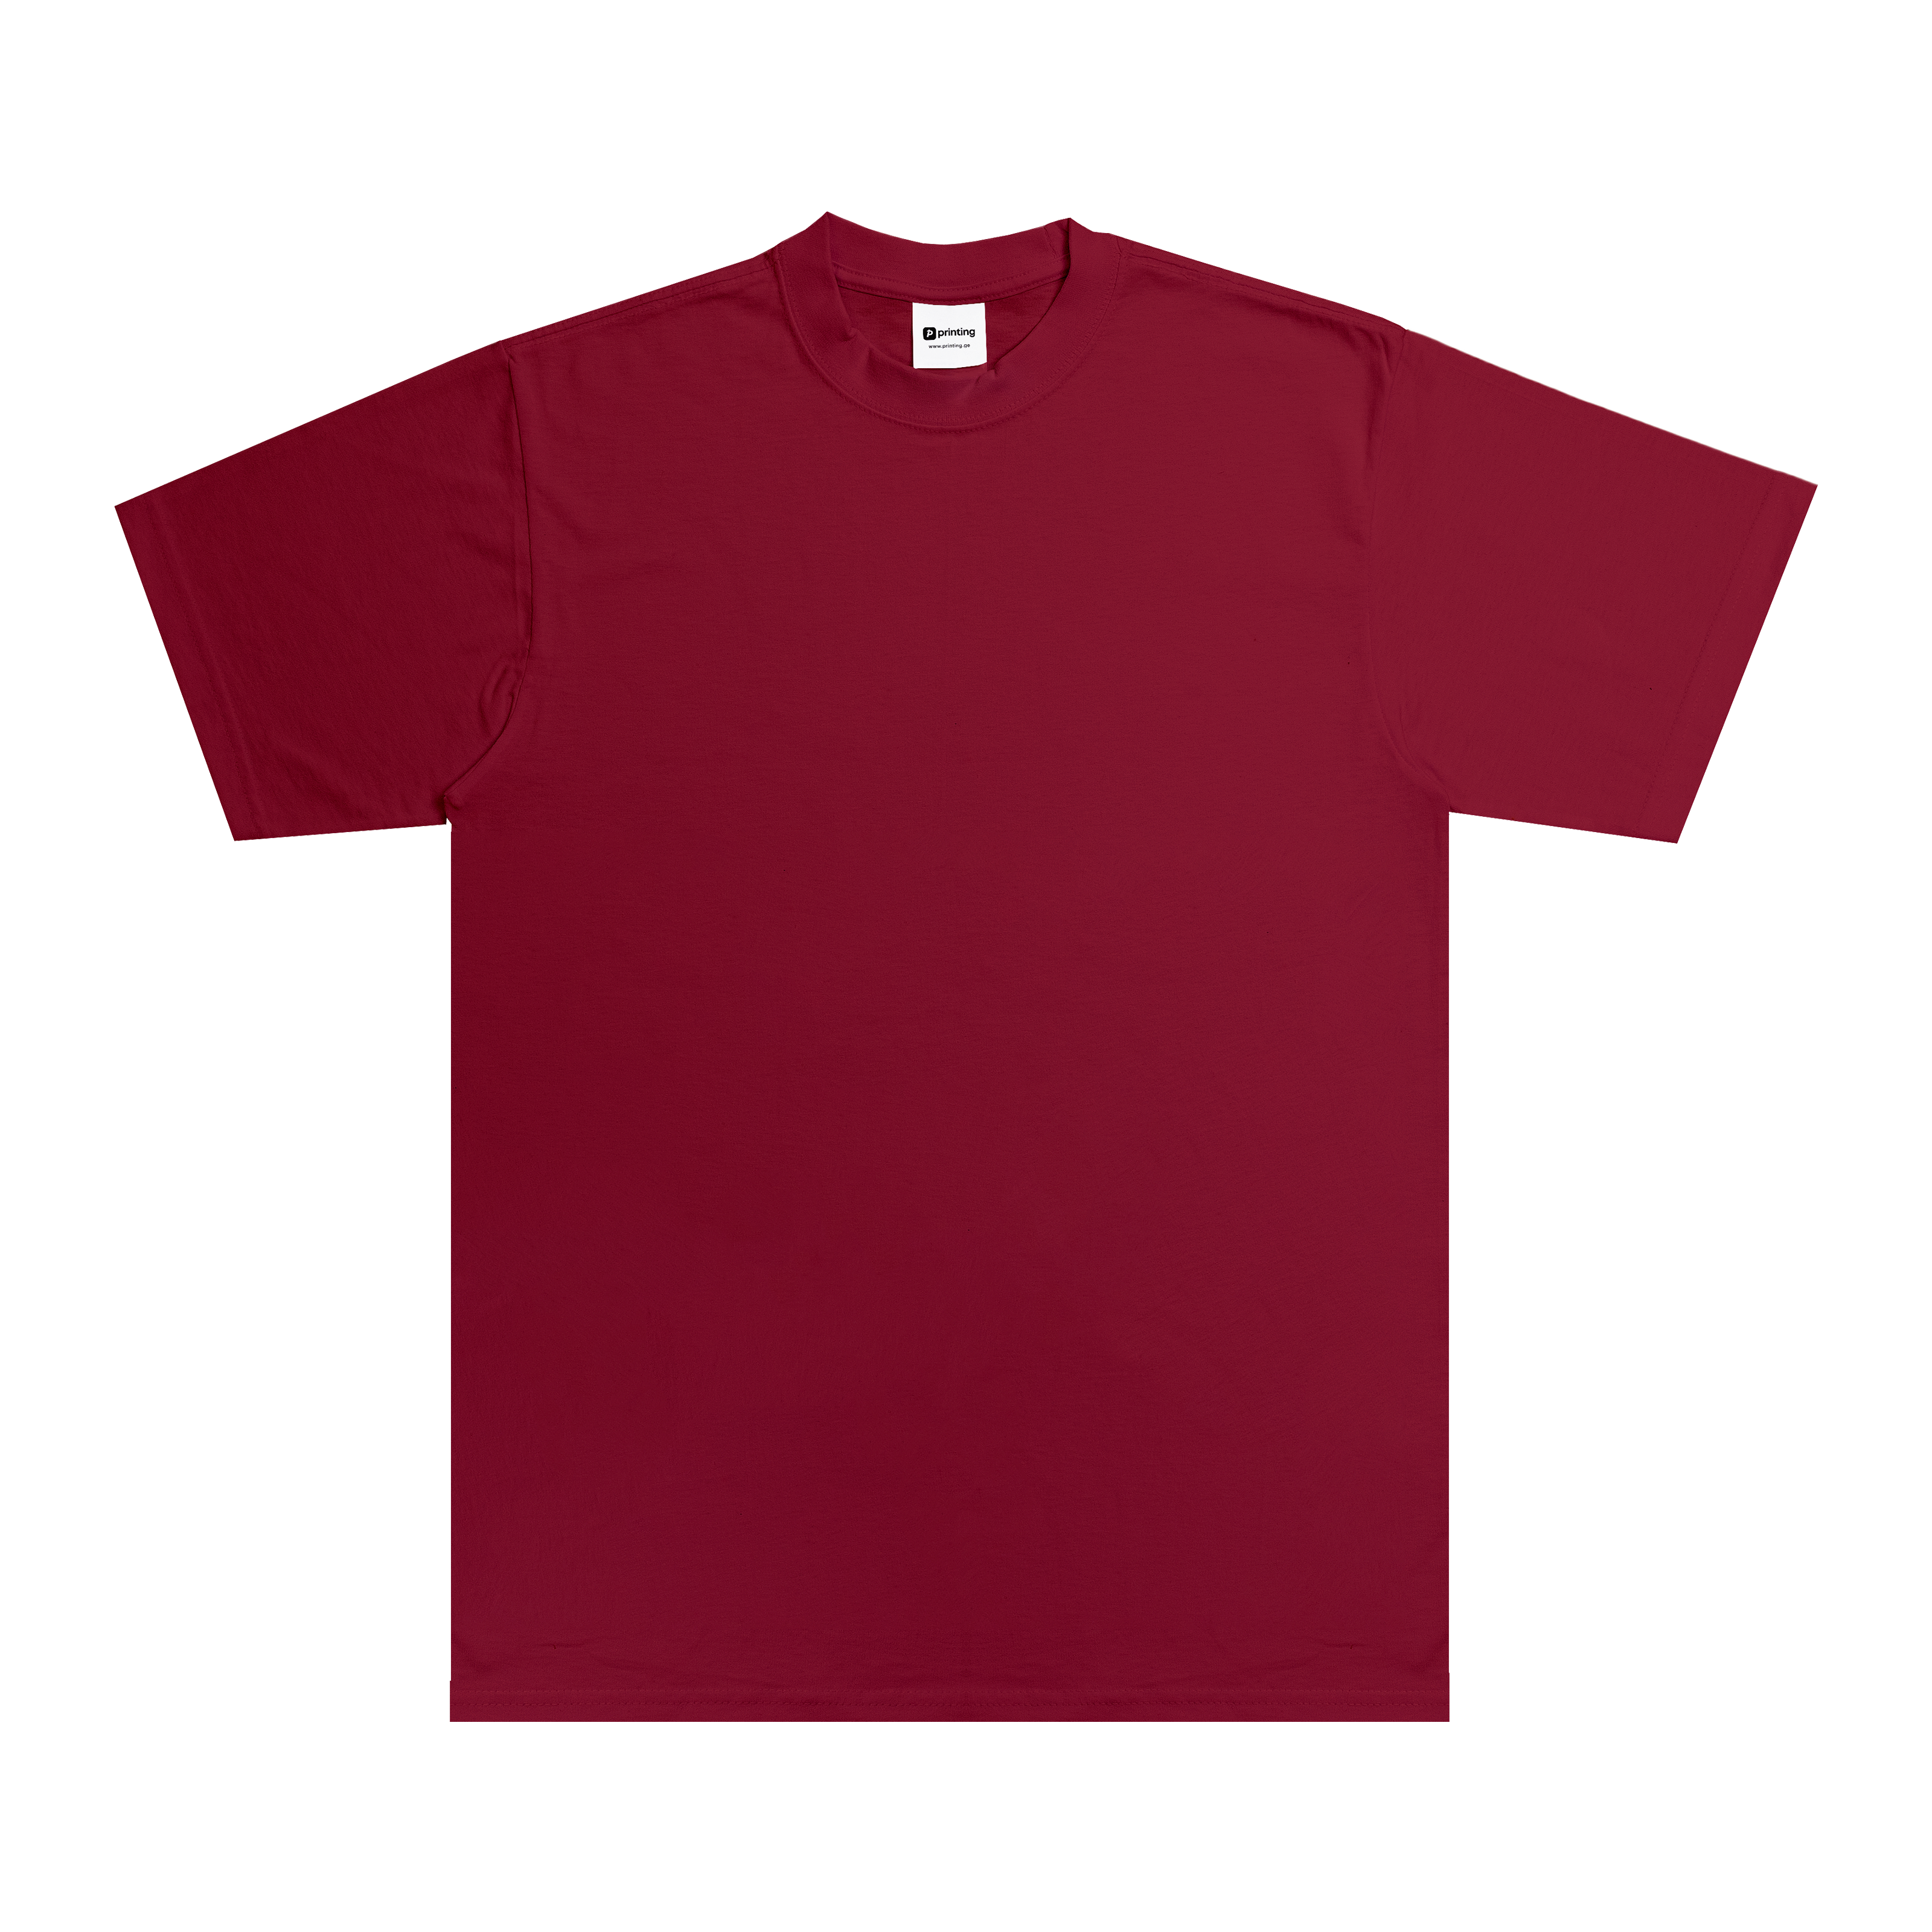 Max Heavyweight T-Shirt - Standard Size - Cardinal